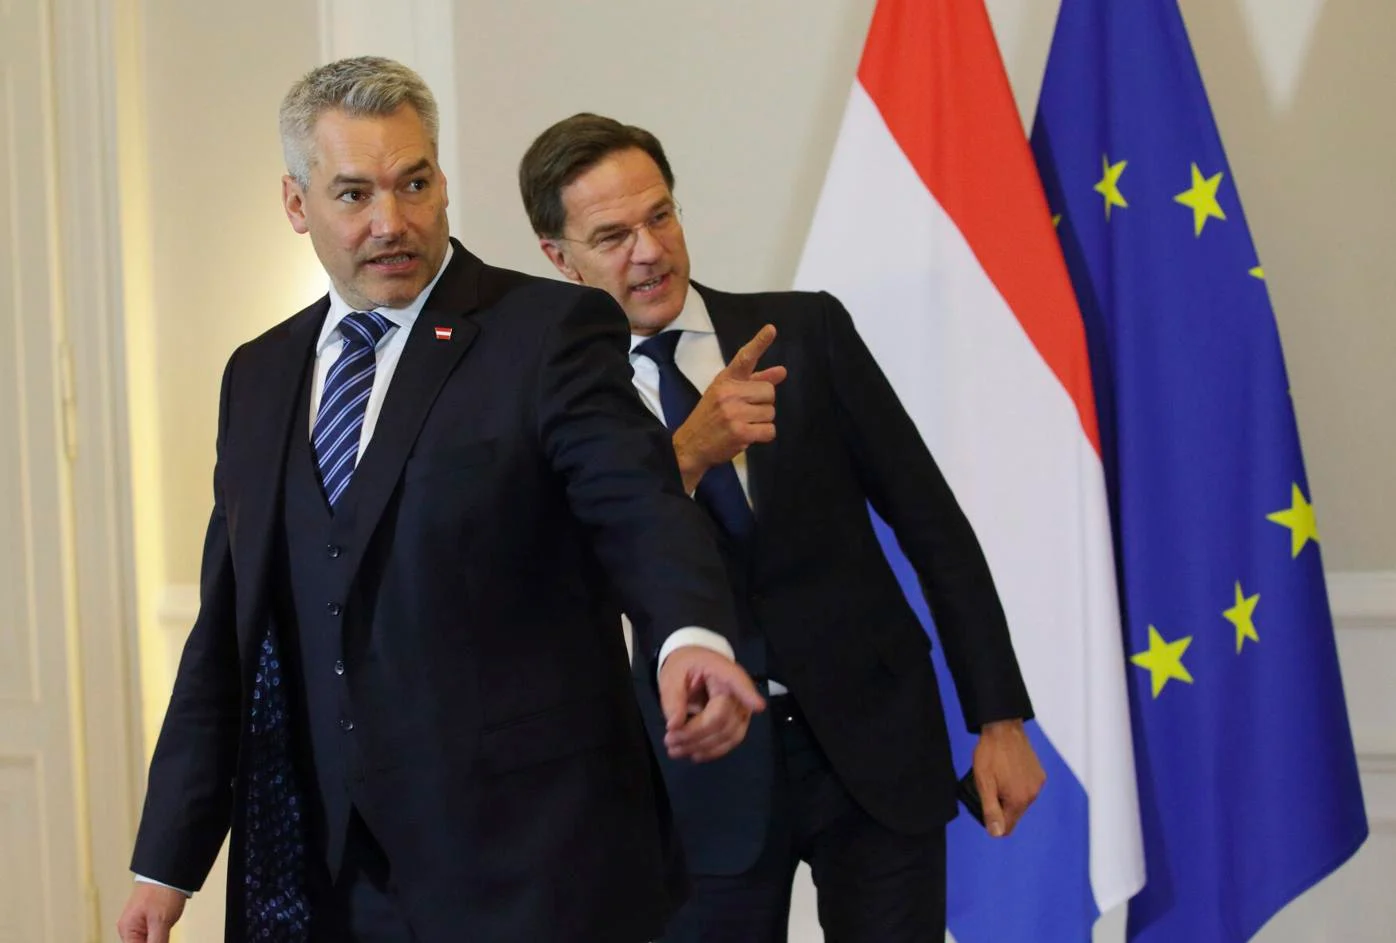 Cancelarul Karl Nehammer și premierul olandez Mark Rutte s-au întâlnit și și-au dat mâna din nou. Aceeași poziție față de România